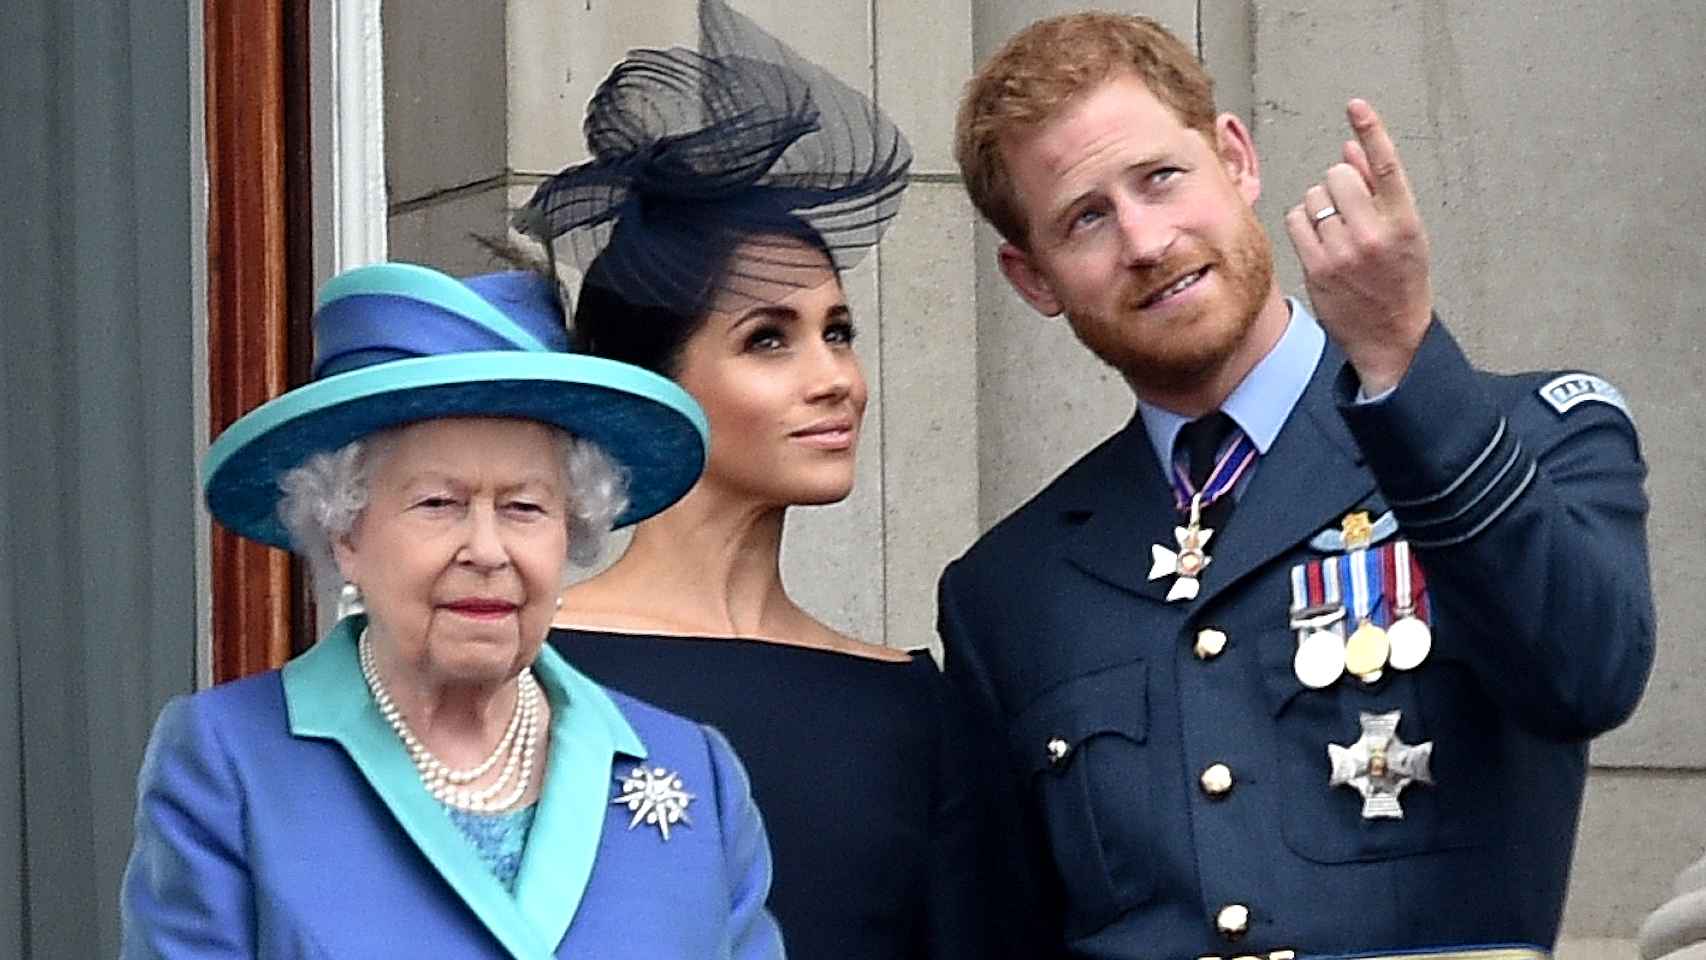 La reina Isabel, Meghan Markle y el príncipe Harry, en el palacio de Buckingham, en 2018.